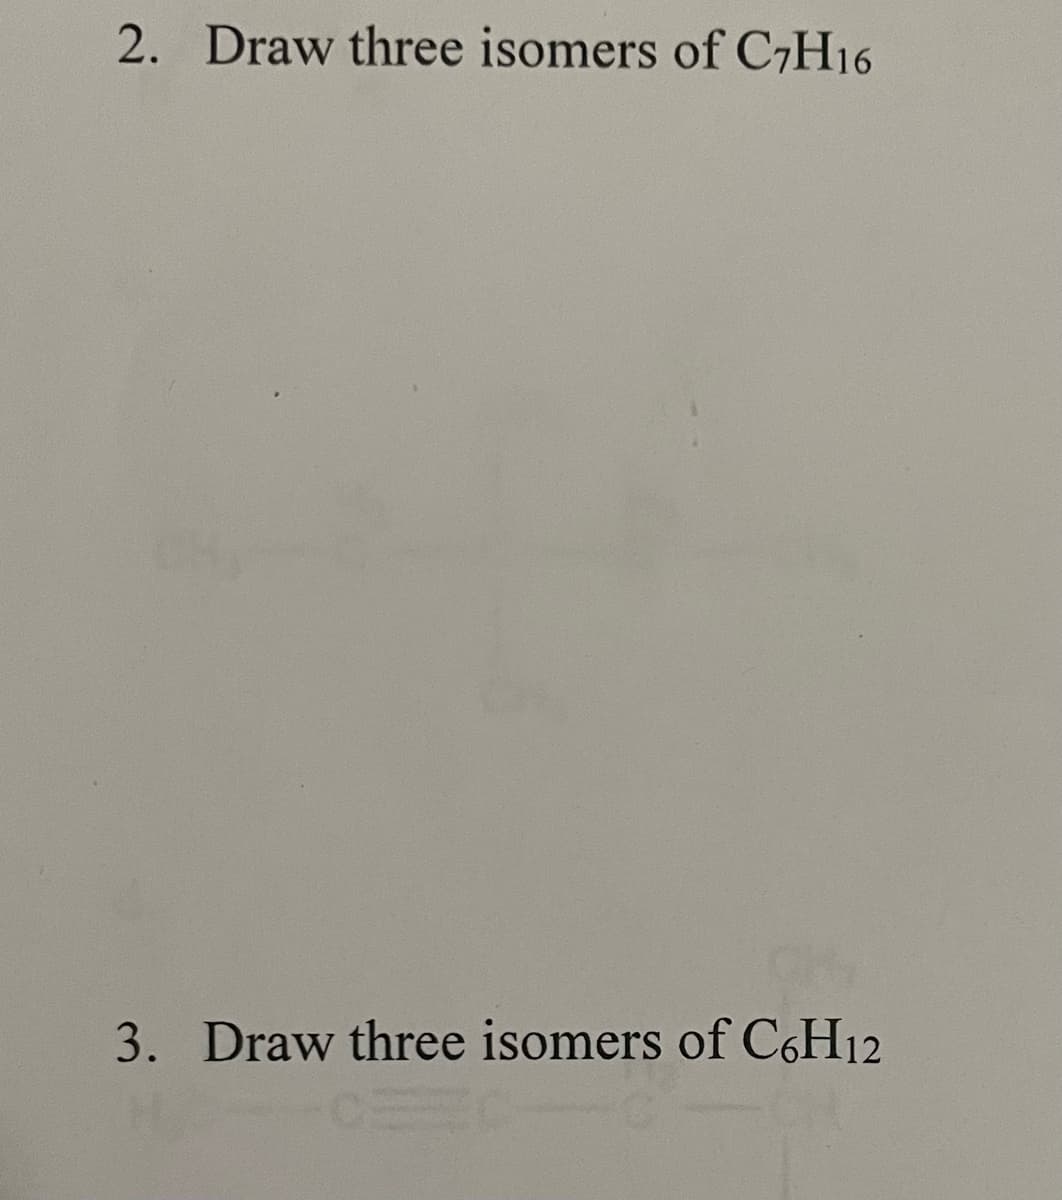 2. Draw three isomers of C7H16
3. Draw three isomers of C6H12